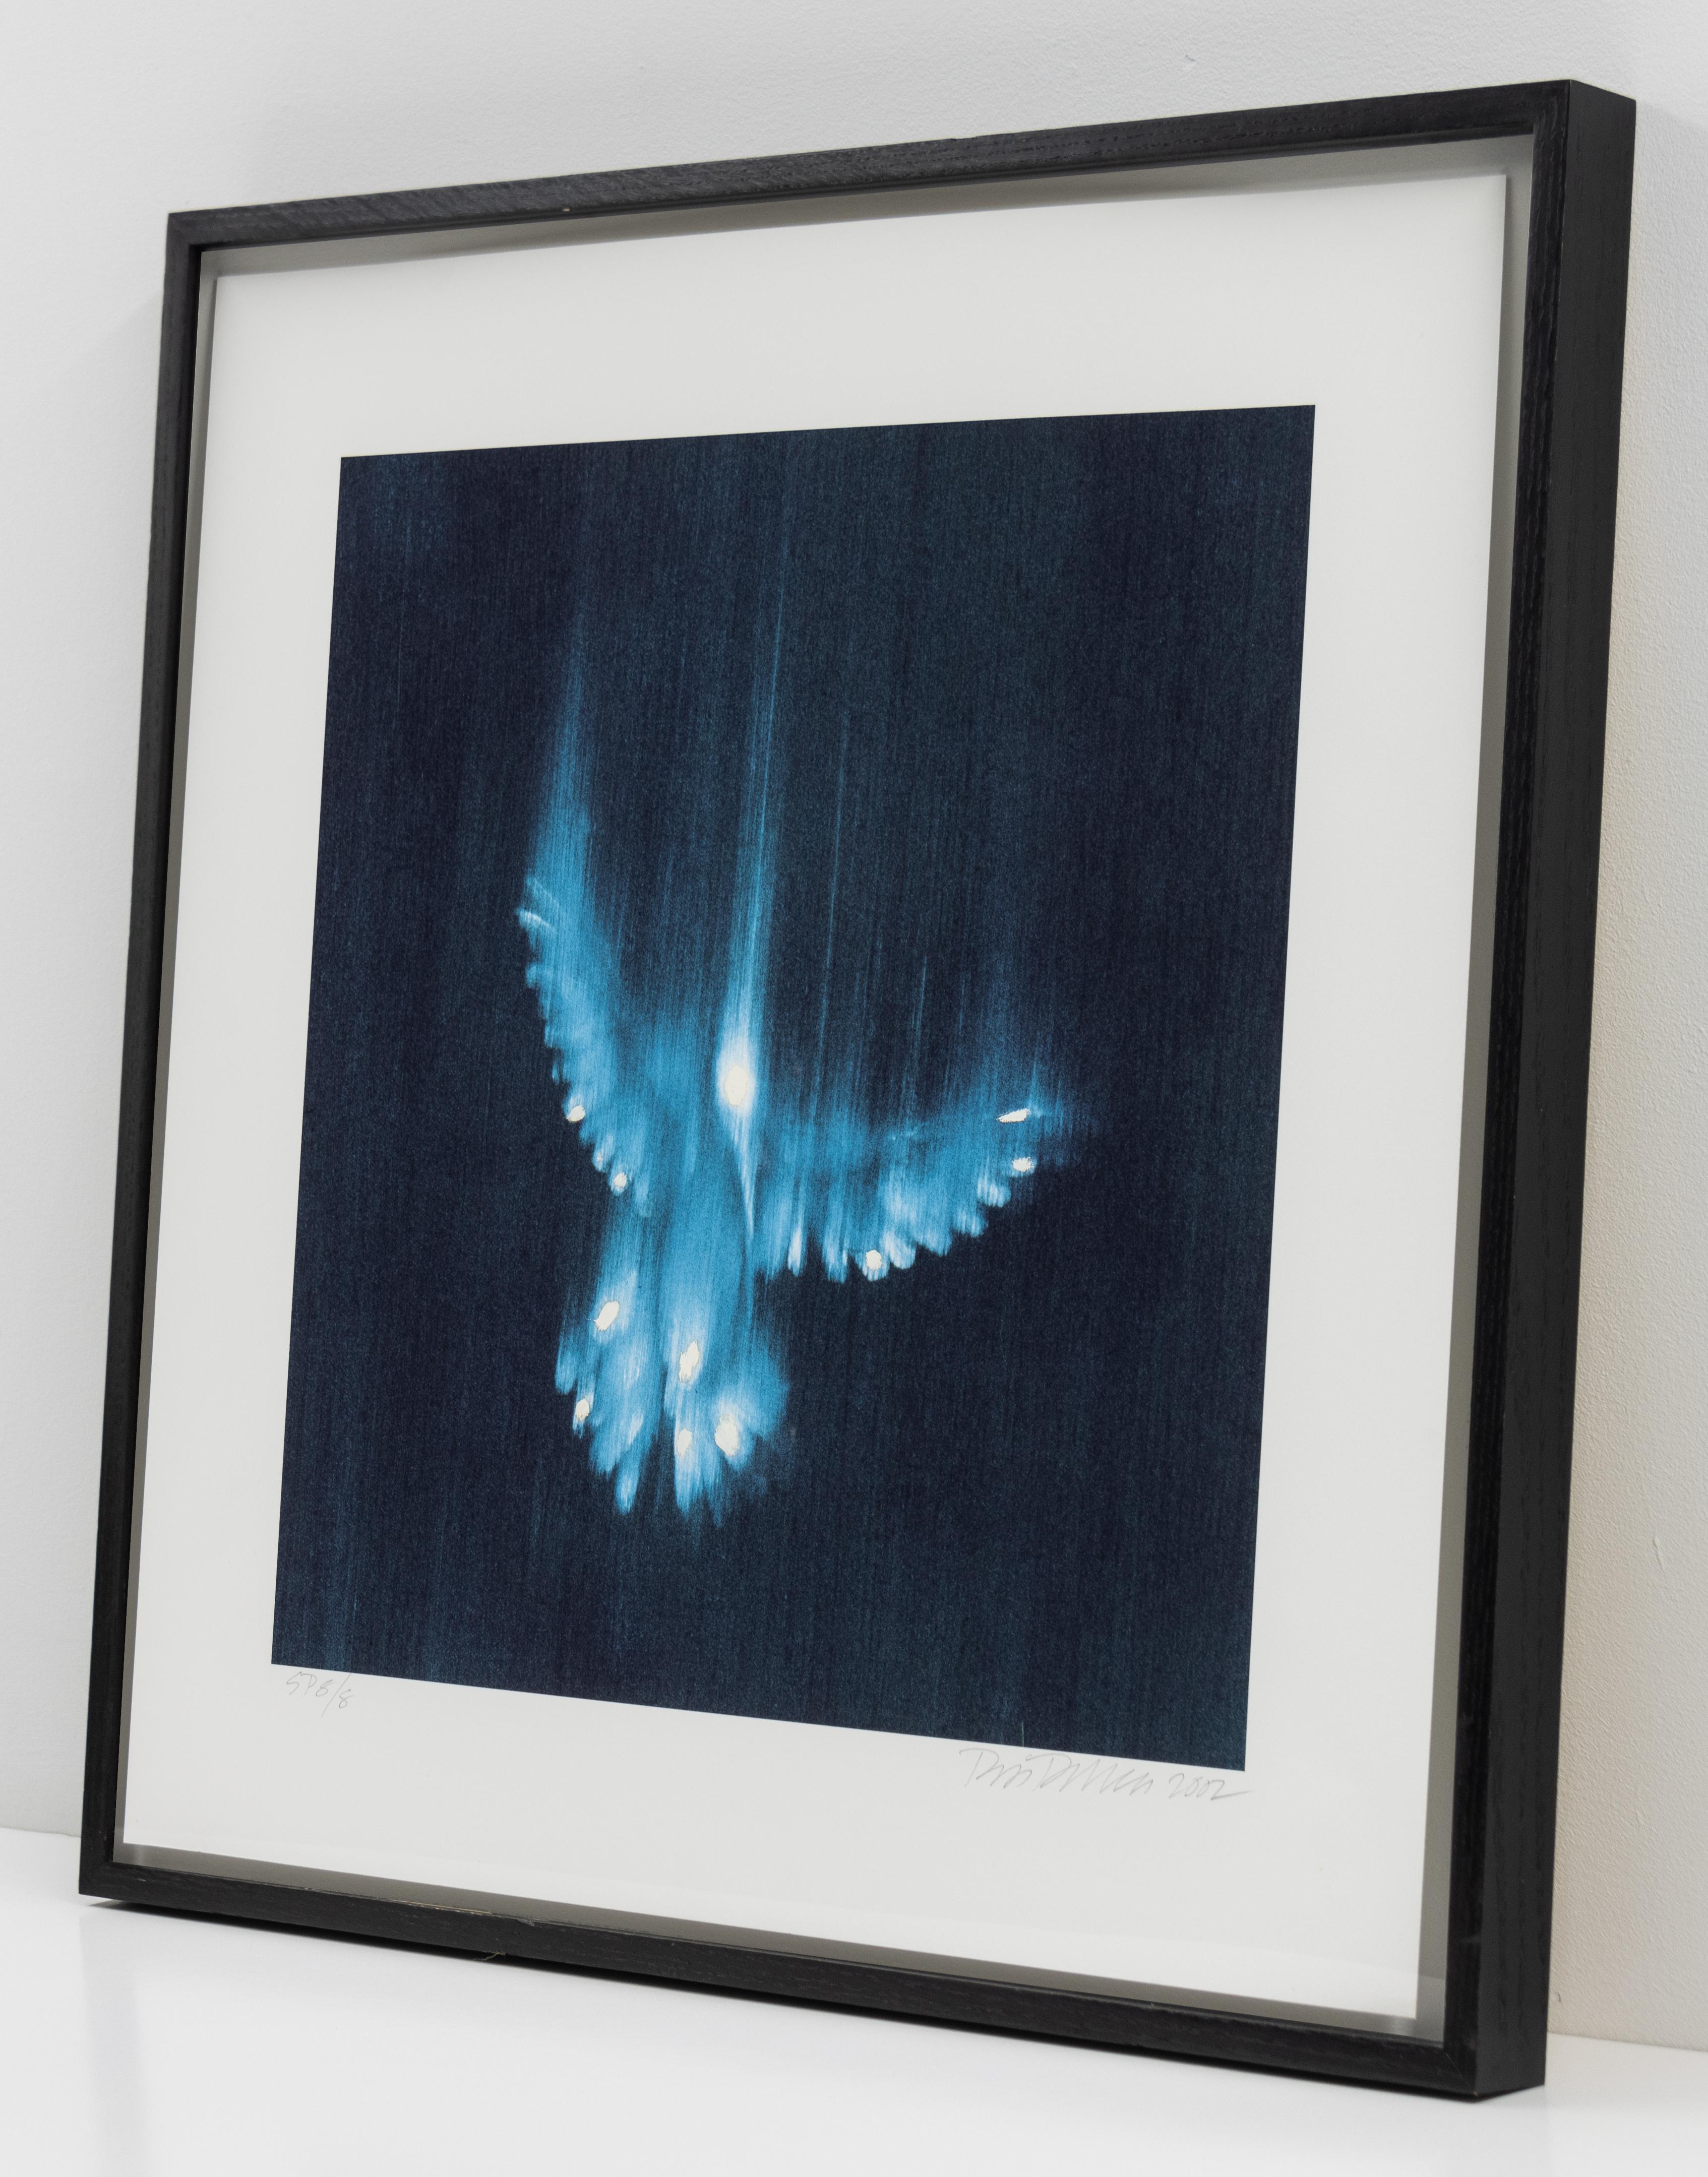 Il s'agit d'une impression numérique à jet d'encre peinte à la main par l'artiste Ross Bleckner.

L'œuvre présente l'image floue d'un oiseau bleu en train de tomber.

